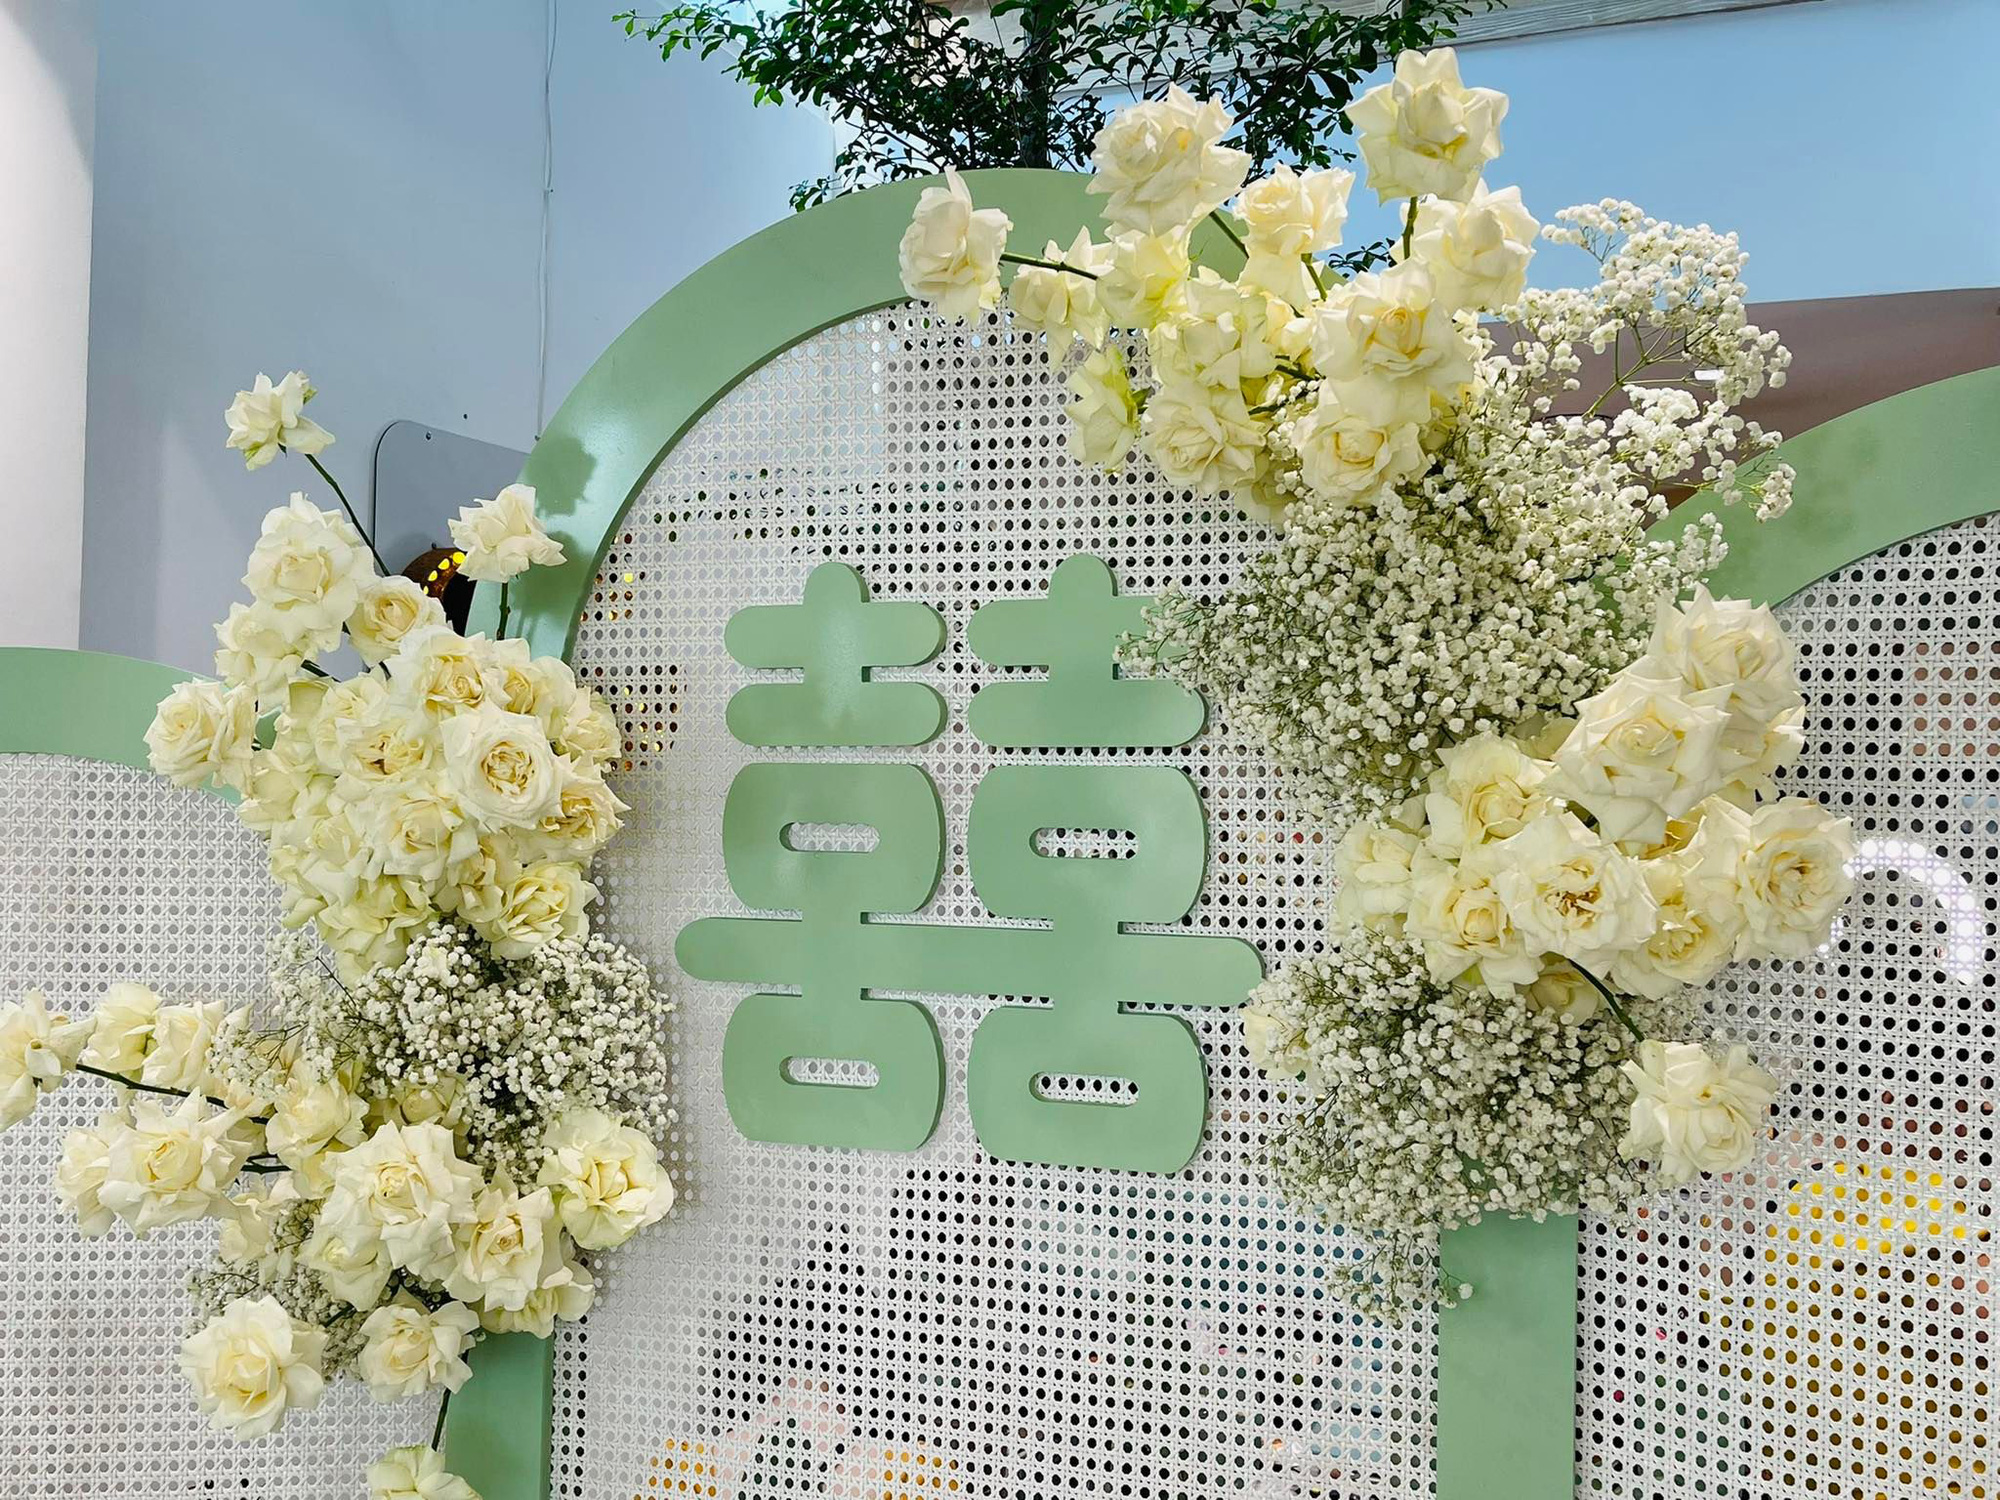 Đám cưới Phương Trinh Jolie - Lý Bình: Nhà riêng trang hoàng đầy hoa tươi, tông màu cưới xanh mint quá xinh - Ảnh 5.